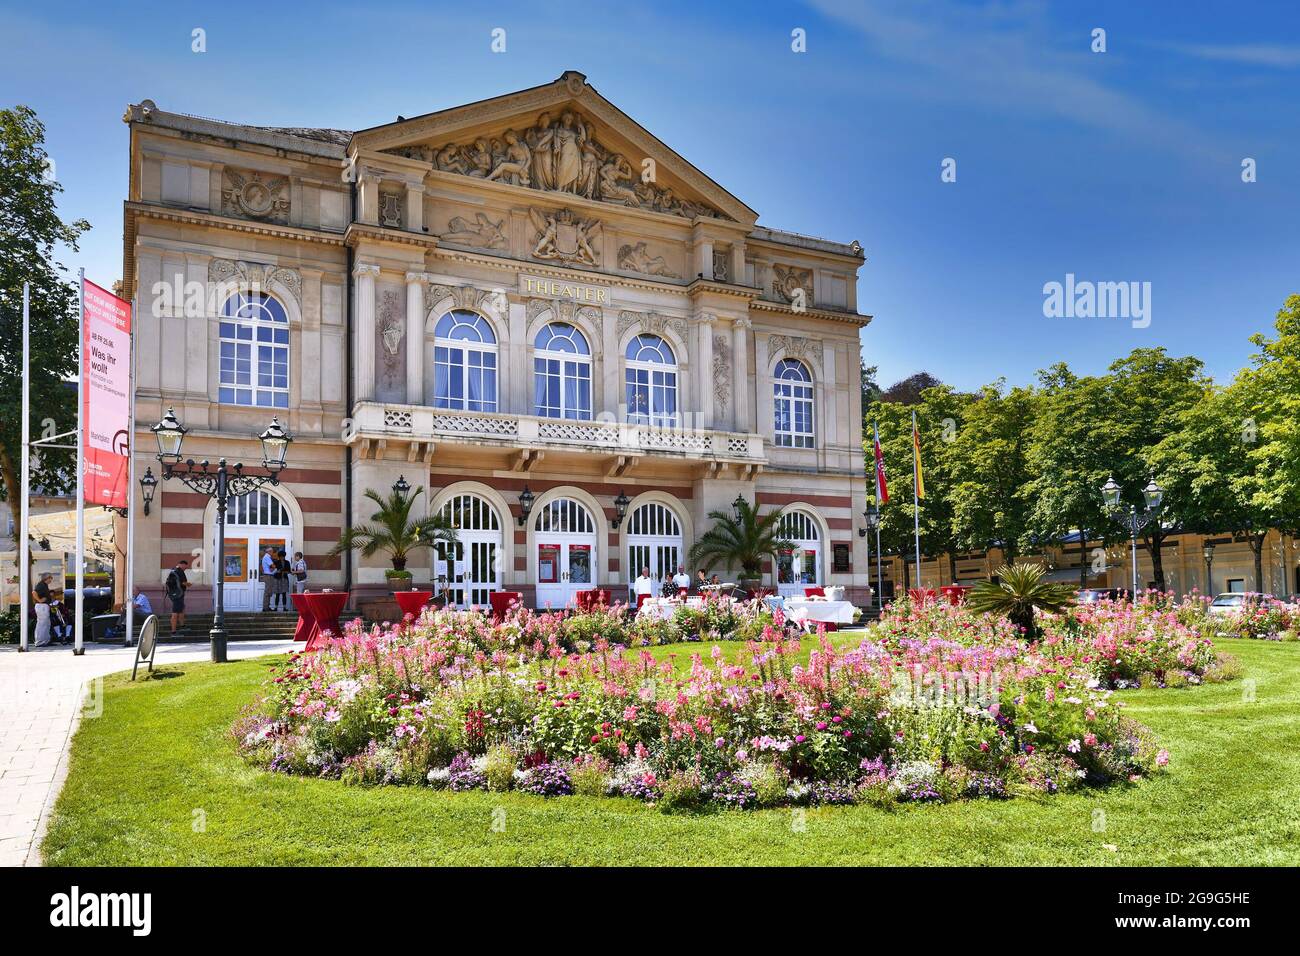 Baden-Baden, Allemagne - juillet 2021: Théâtre historique appelé 'Theatre Baden-Baden' à la place Goetheplatz Banque D'Images